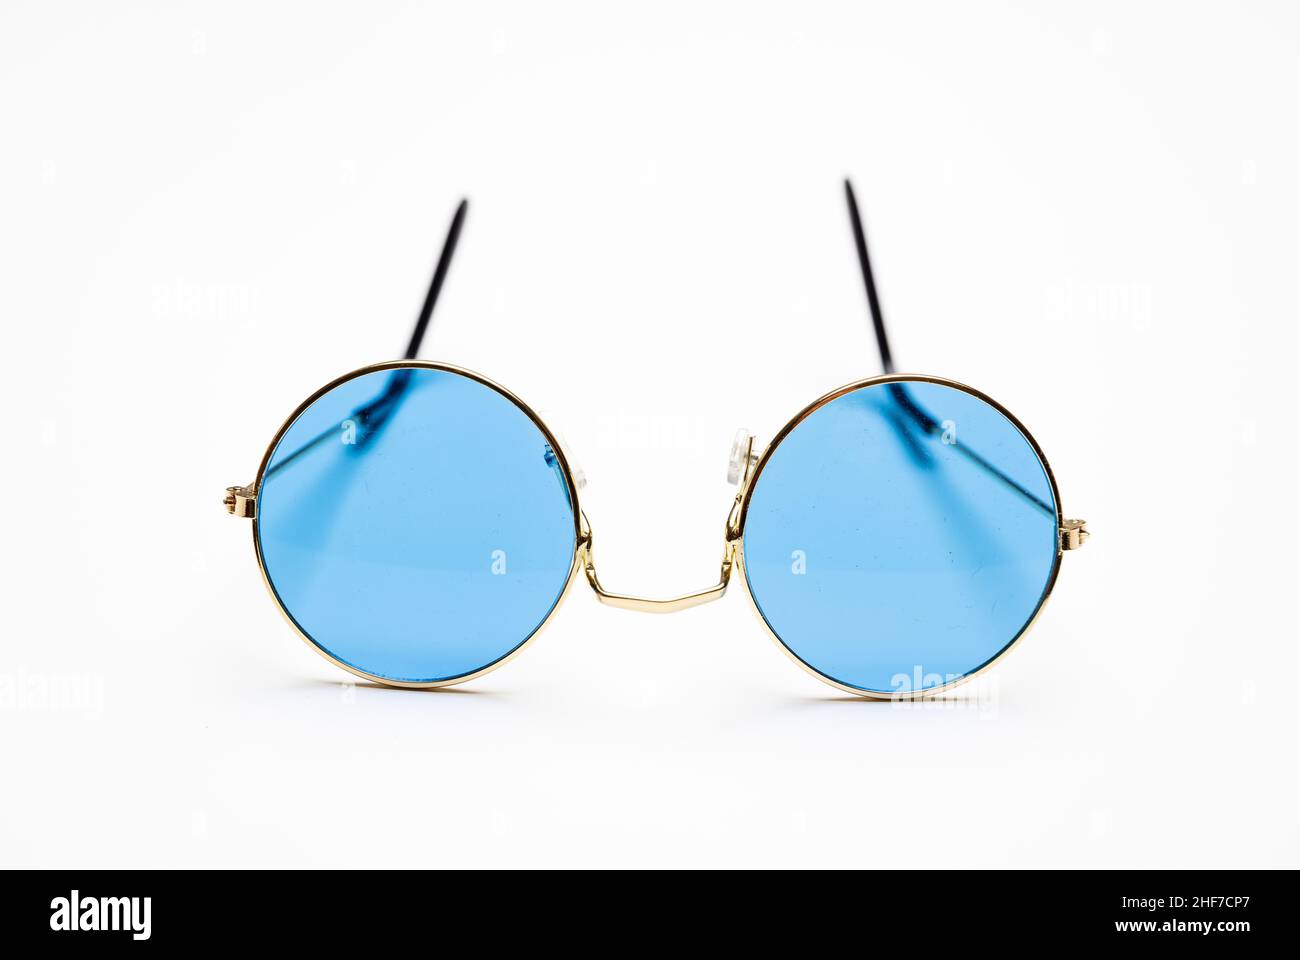 Gafas de sol con lentes de color azul y marco metálico redondo dorado aislado sobre fondo blanco, recortado, elemento de diseño Foto de stock